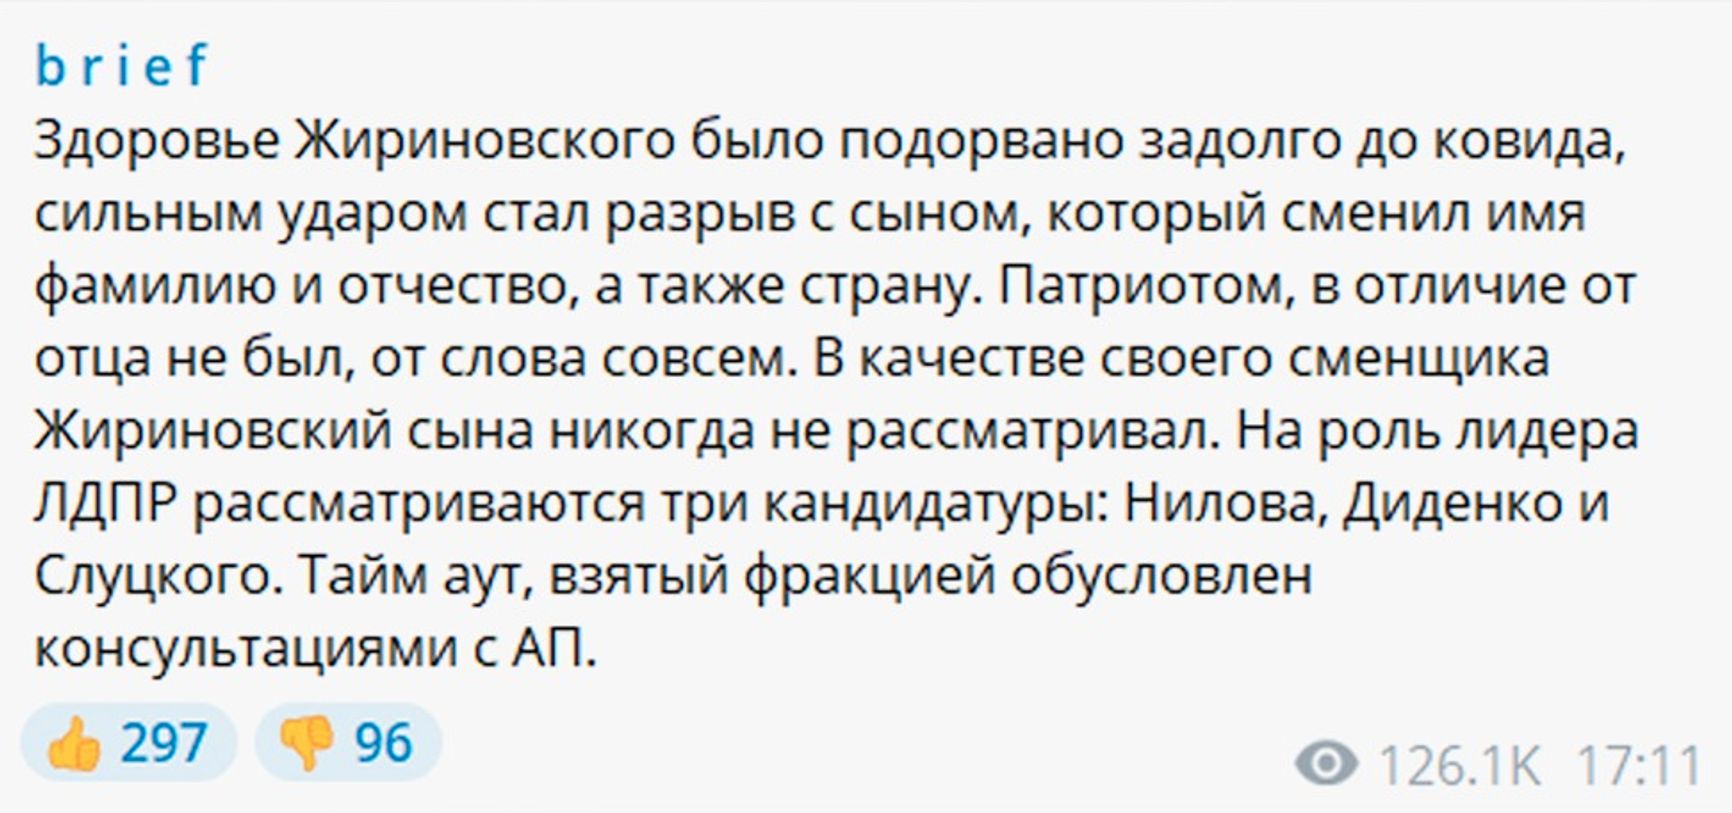 Baza: сын Жириновского Игорь Лебедев сменил ФИО на Гарсия Давид Александрович. Теперь он может попытаться обойти санкции ЕС